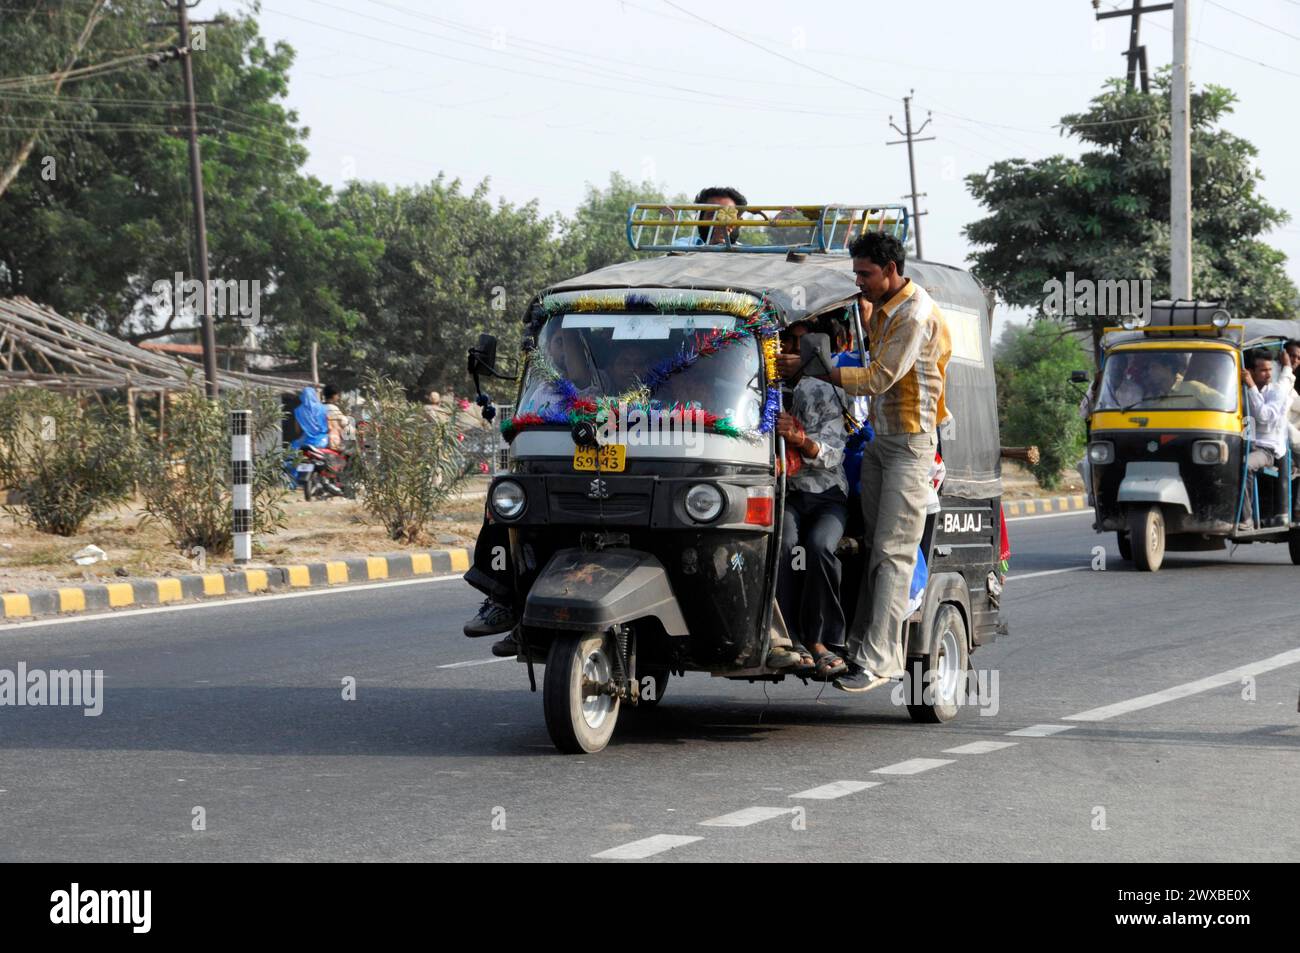 Ein Tuk-Tuk mit Passagieren auf einer belebten Straße als alltägliches Transportmittel, Rajasthan, Nordindien, Indien Stockfoto